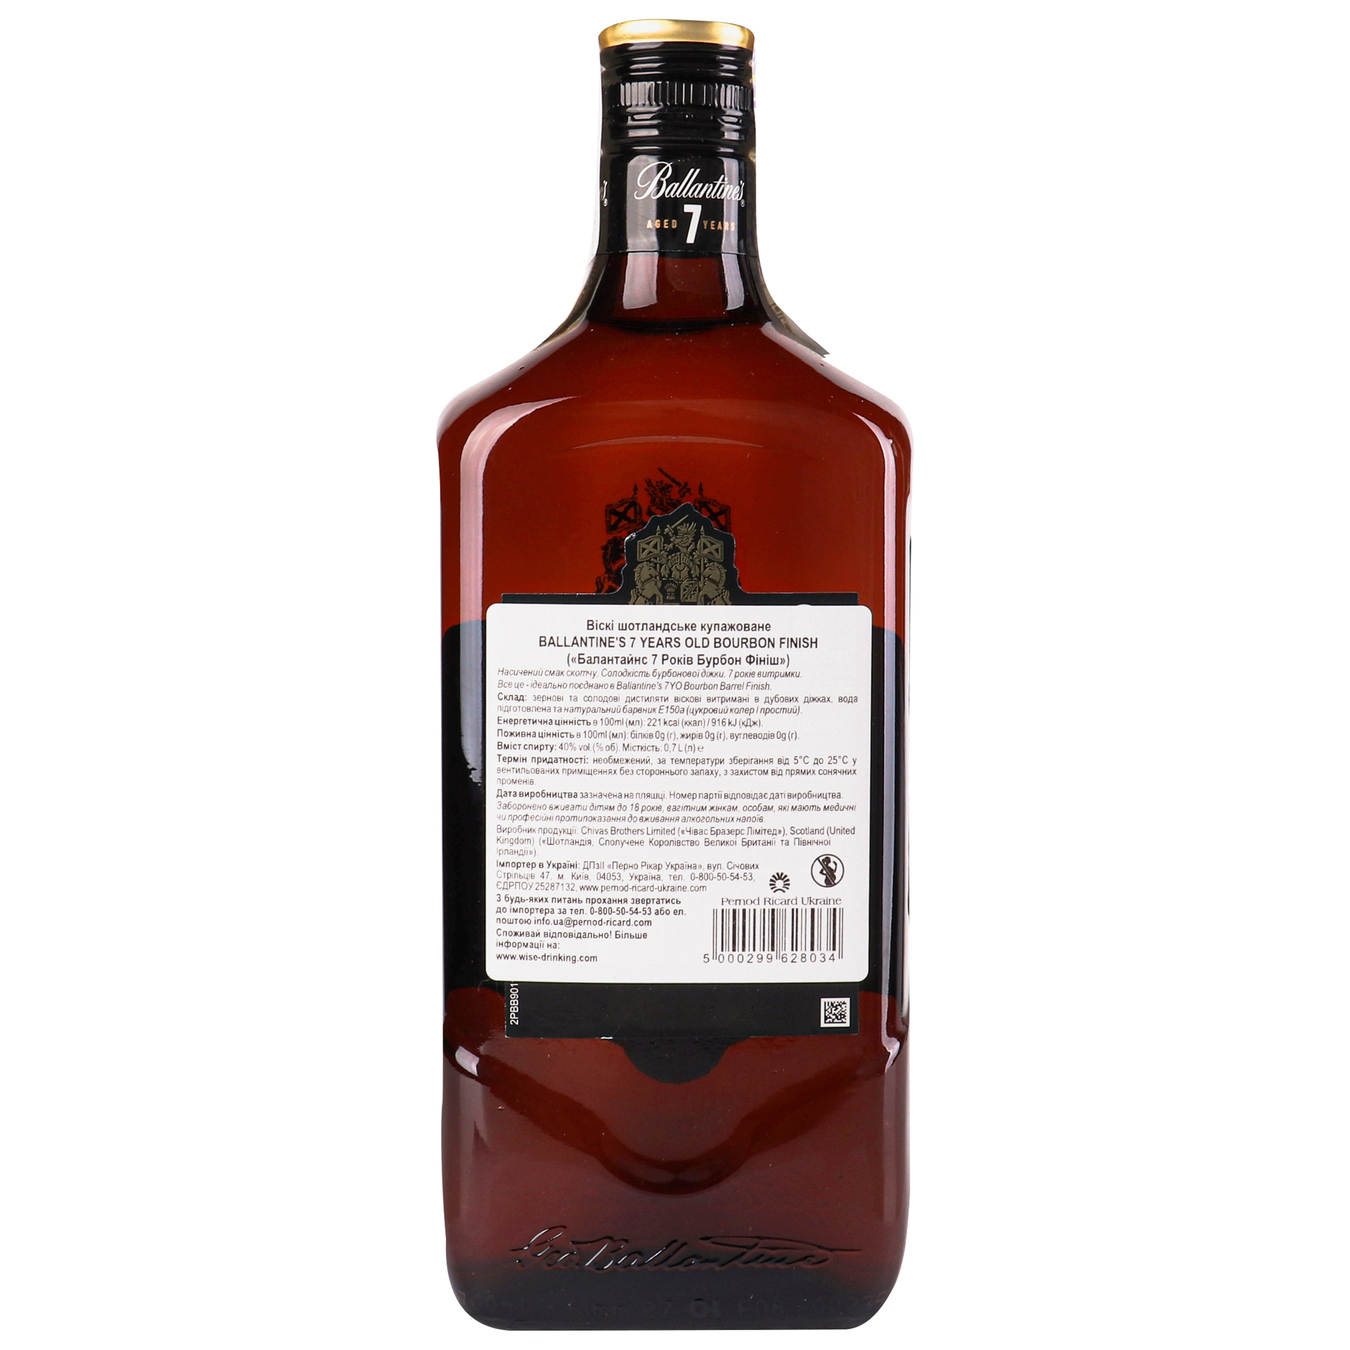 Віскі Ballantine's Bourbon Finish шотландське купажоване 40% 0.7л 2